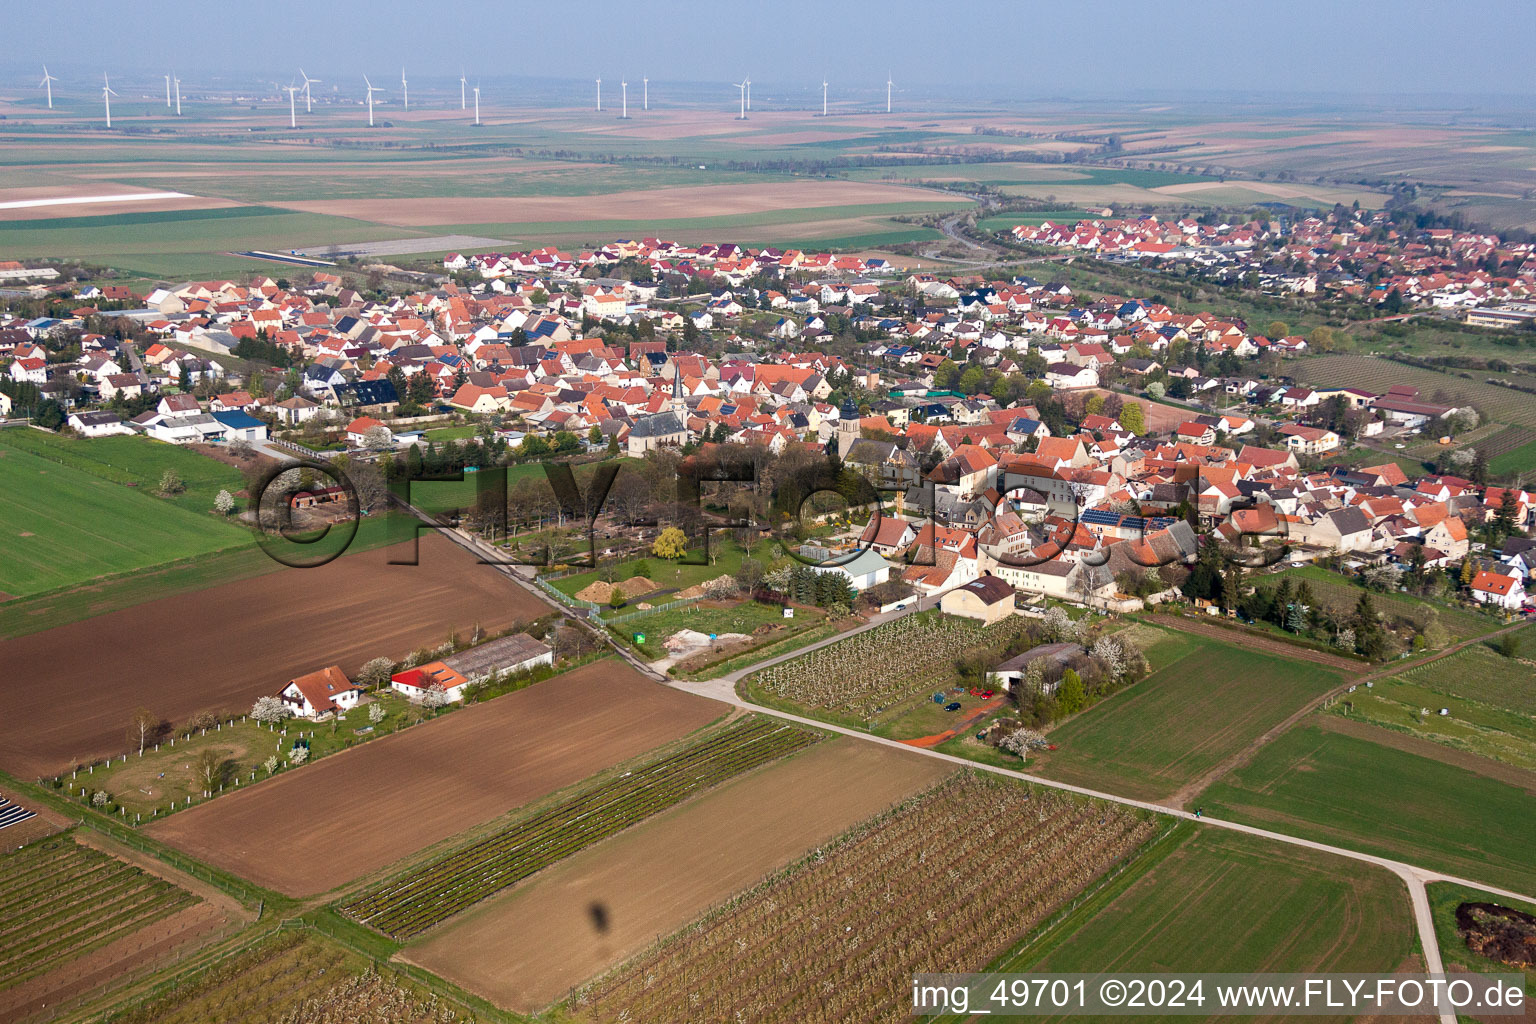 Luftbild von Ortsansicht der Straßen und Häuser der Wohngebiete in Ober-Flörsheim im Bundesland Rheinland-Pfalz, Deutschland